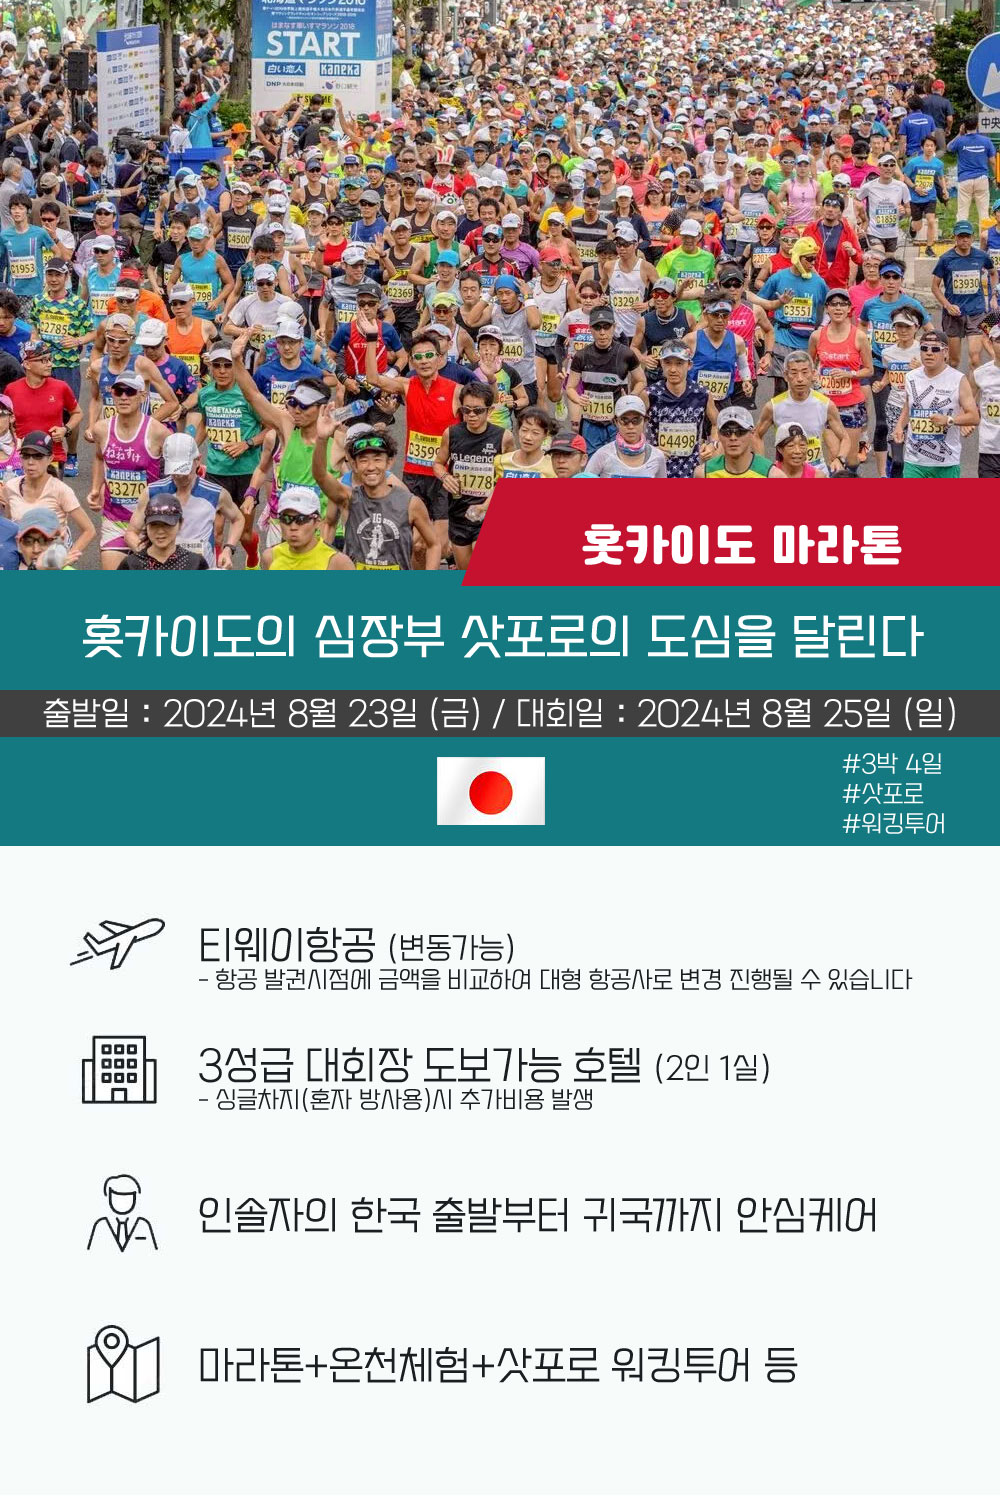 홋카이도마라톤대회